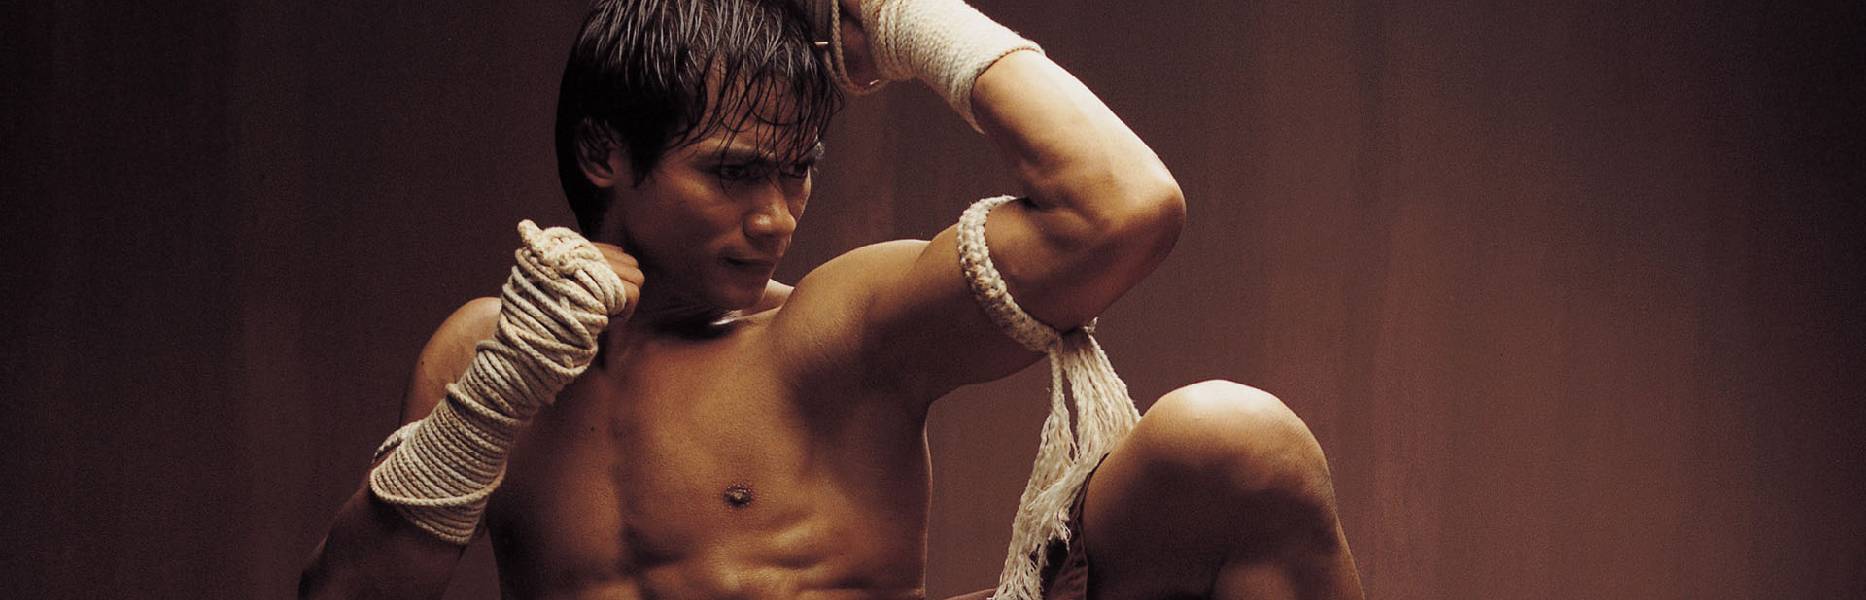 Top 10 phim võ thuật của Tony Jaa cực kì hấp dẫn